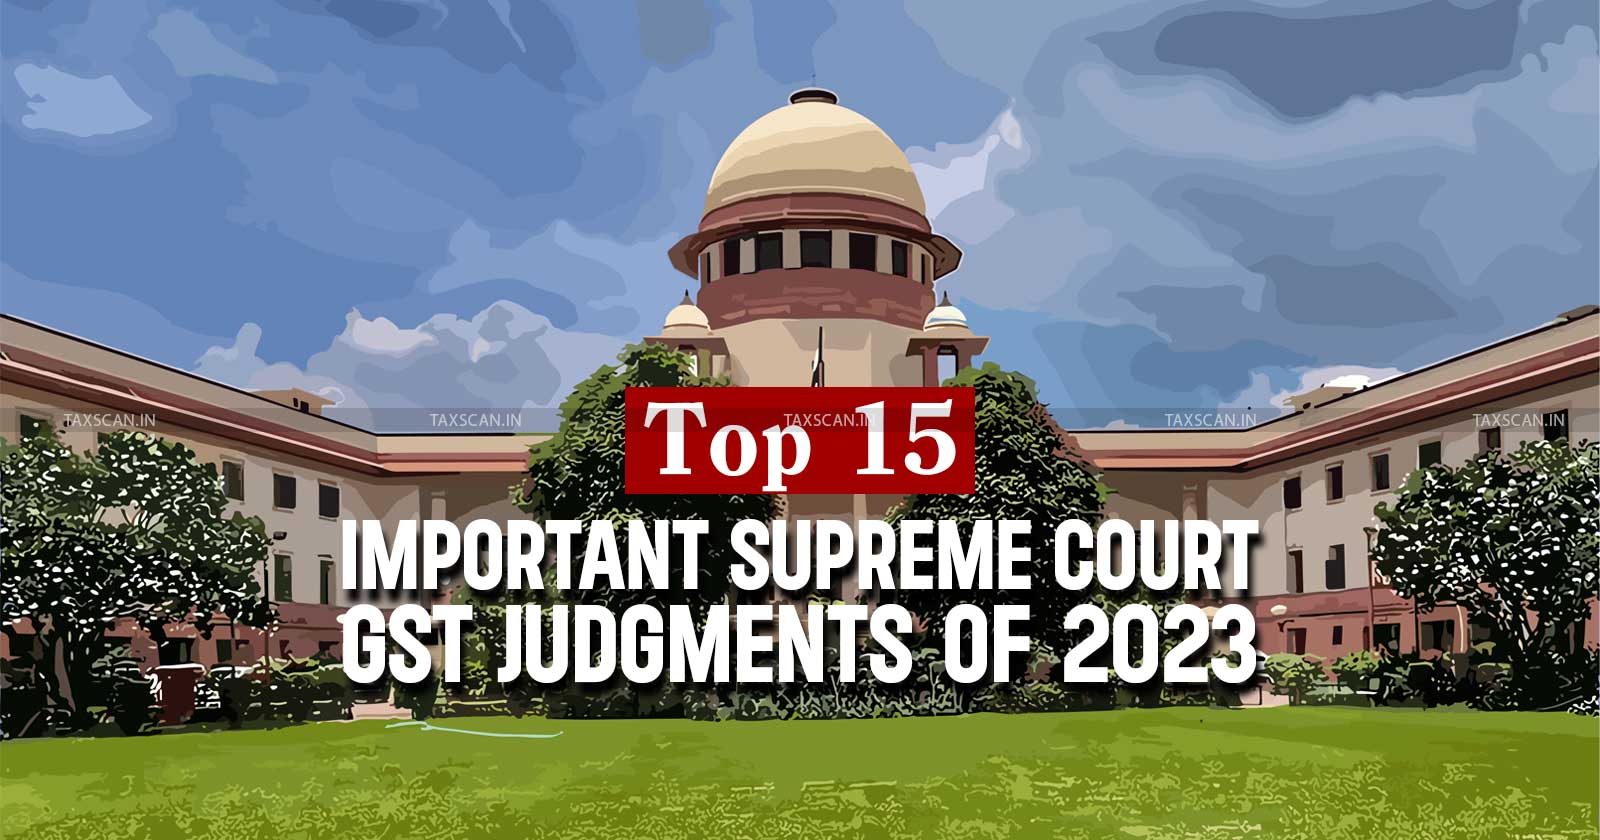 Supreme Court GST Judgements of 2023 - GST - Supreme Court - Supreme Court GST Judgements - taxscan